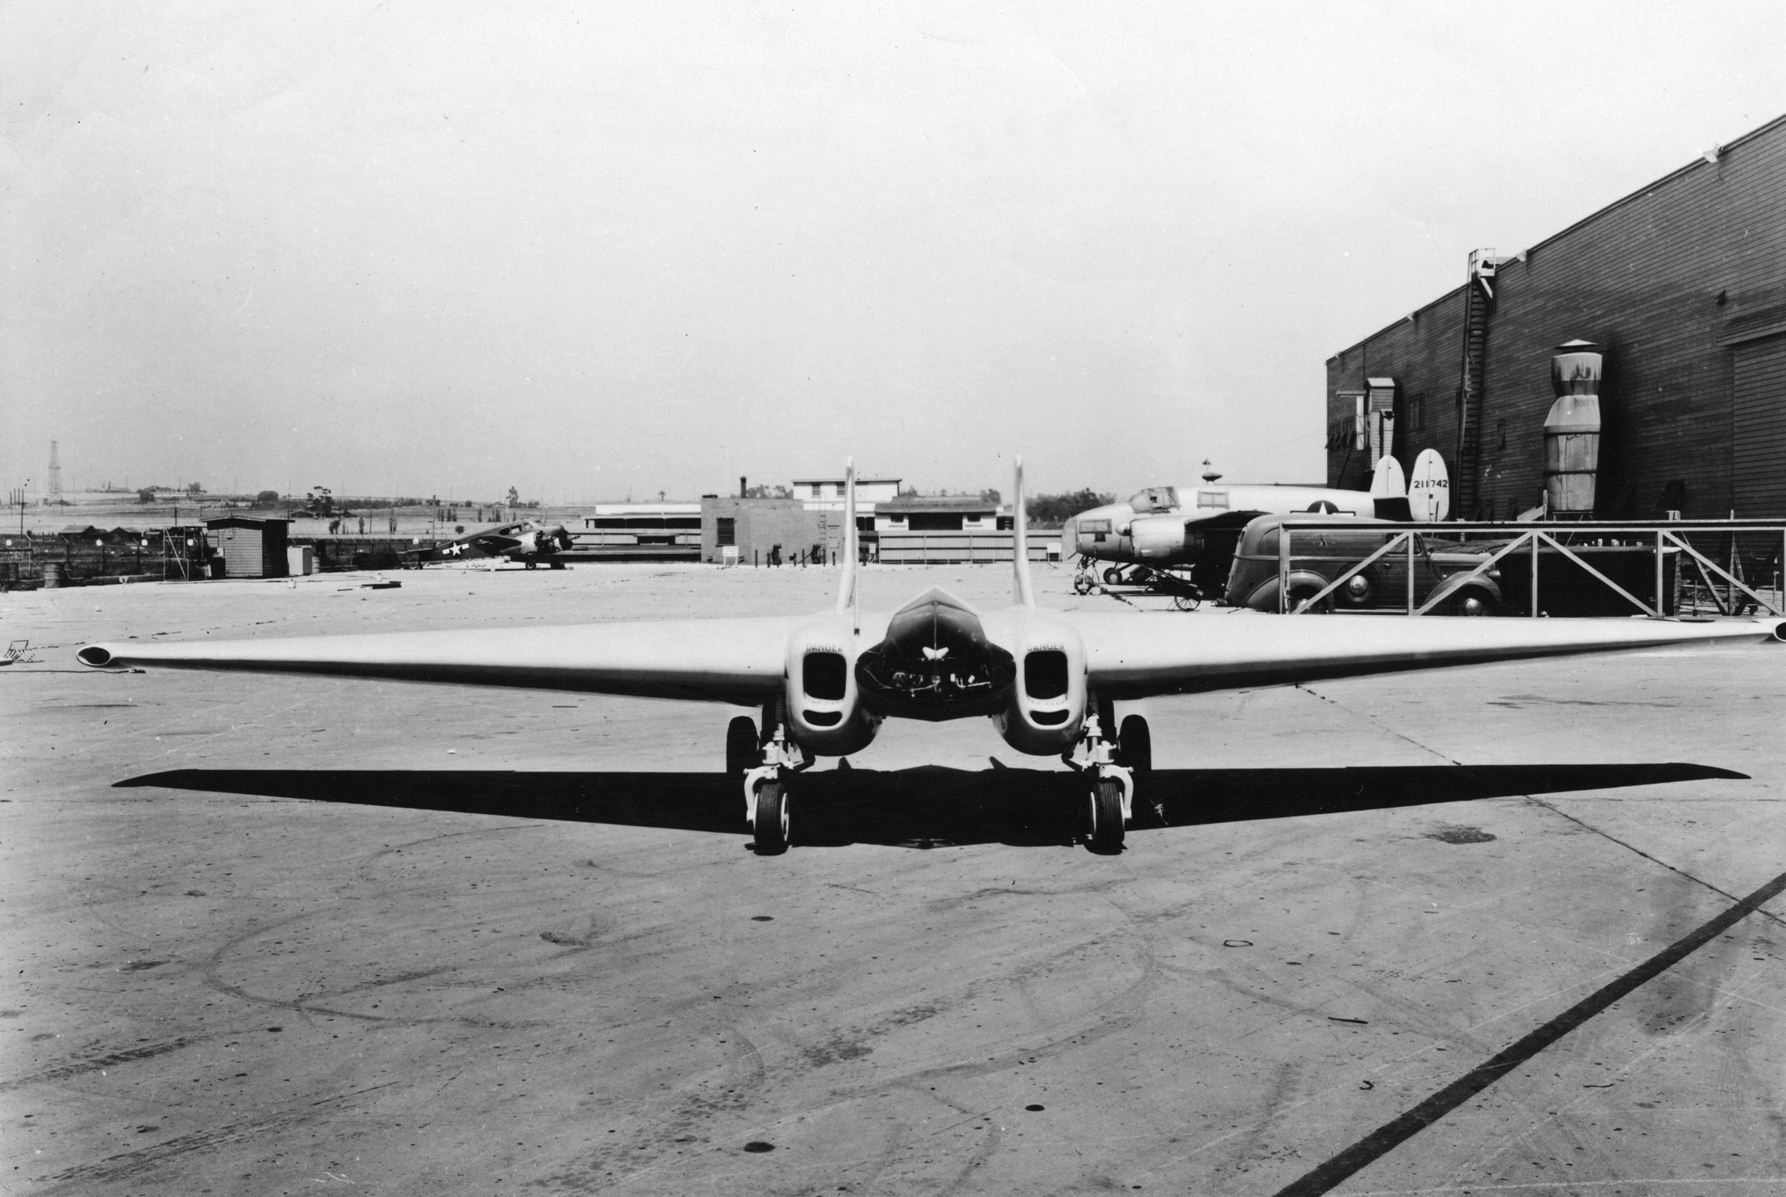 Самолет Нортроп XP-79B для таранных атак. Летчик располагался в кабине в лежачем положении. Самолет был разрушен в первом полете